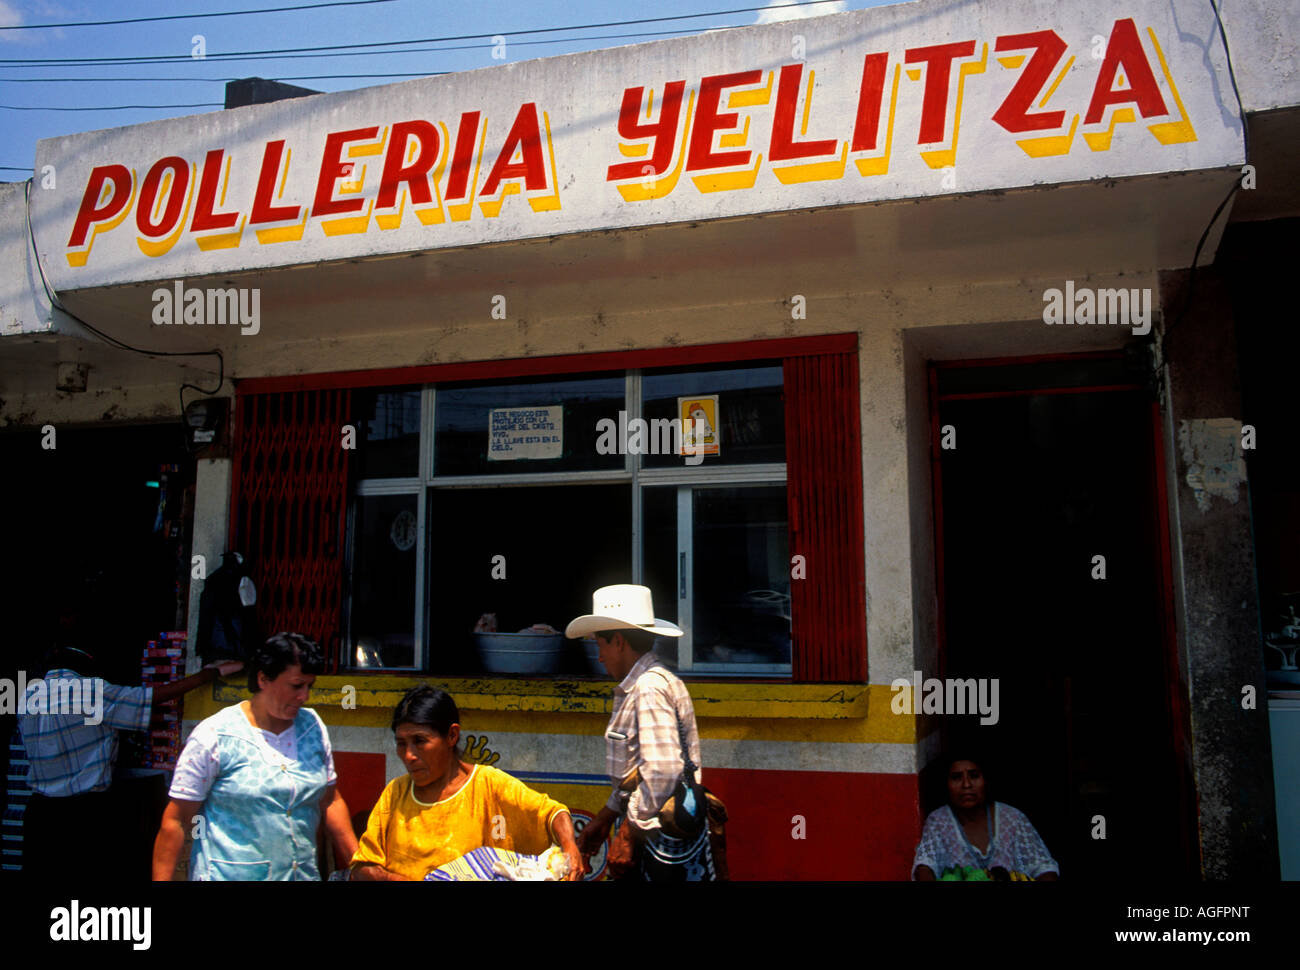 Guatemaltekische Volk, Geflügel store, Shop, Tienda, Polleria Yelitza, Amir Chupan, Alta Verapaz, Alta Verapaz, Guatemala, Mittelamerika Stockfoto